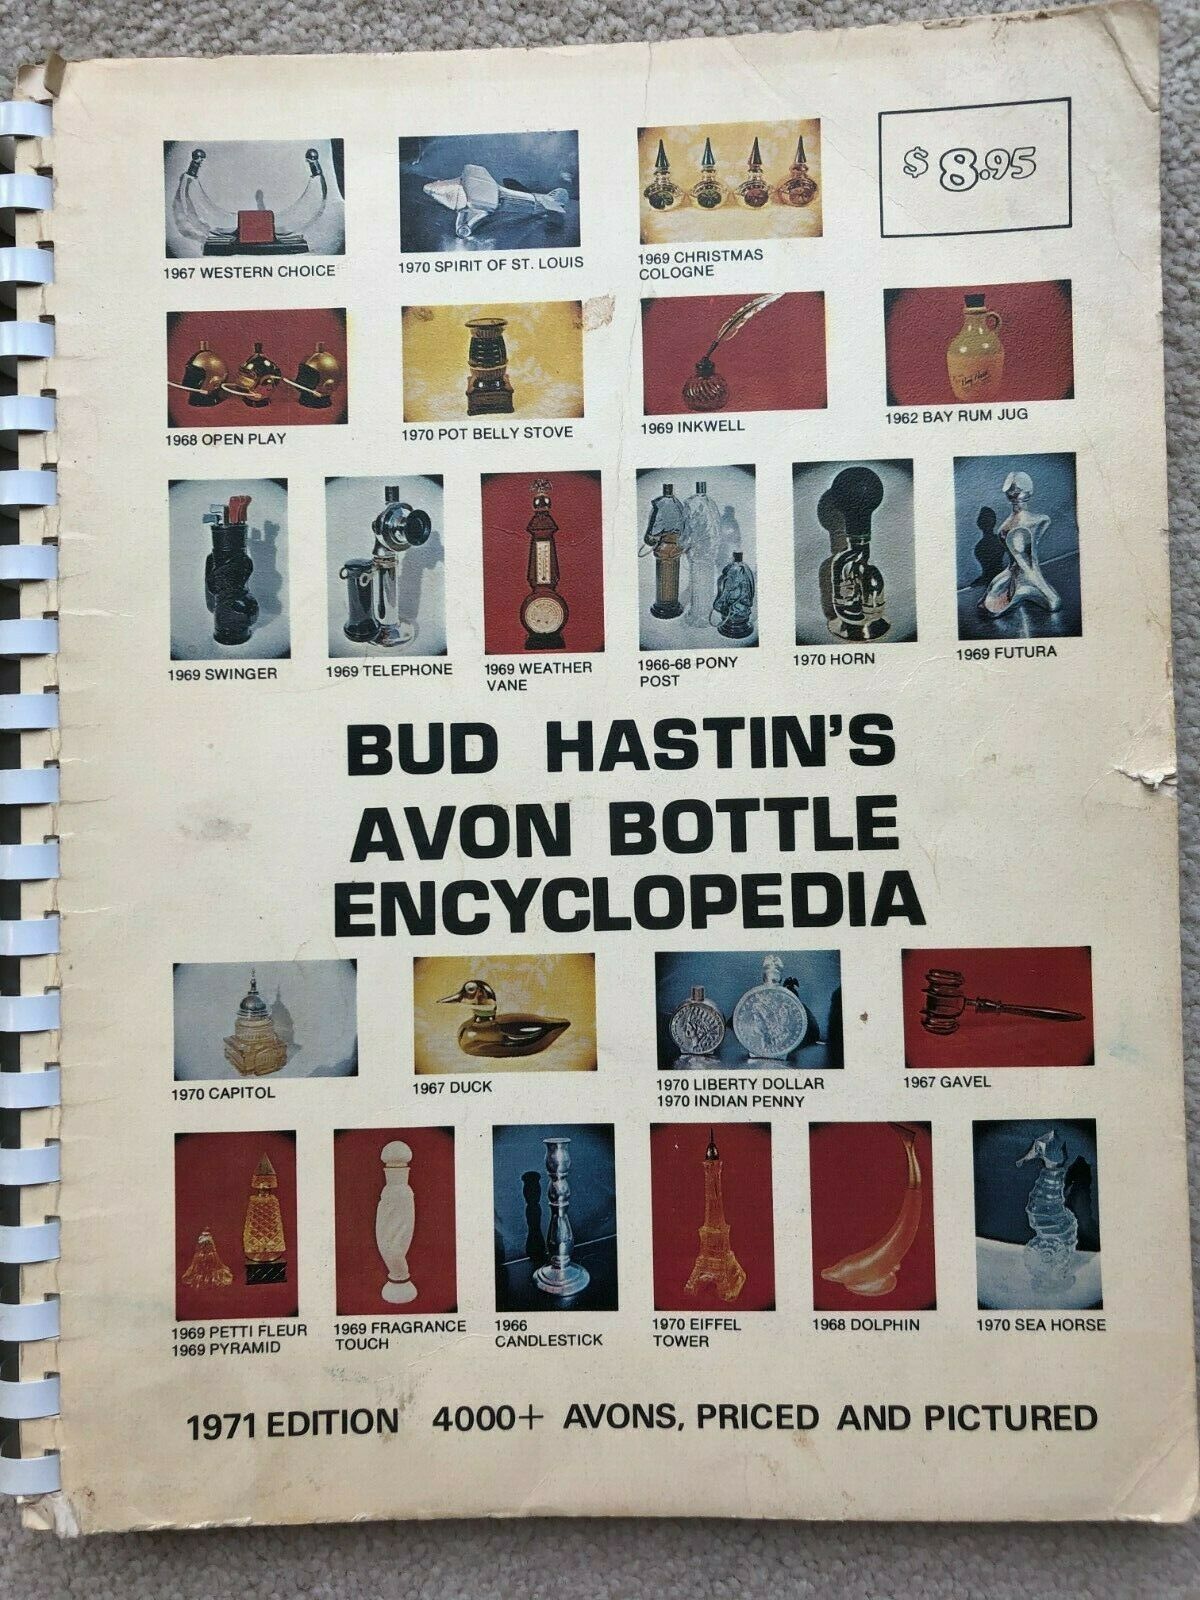 BUD HASTIN'S AVON BOTTLE ENCYCLOPEDIA ~ 1971 Edition, Over 4,000 Avons